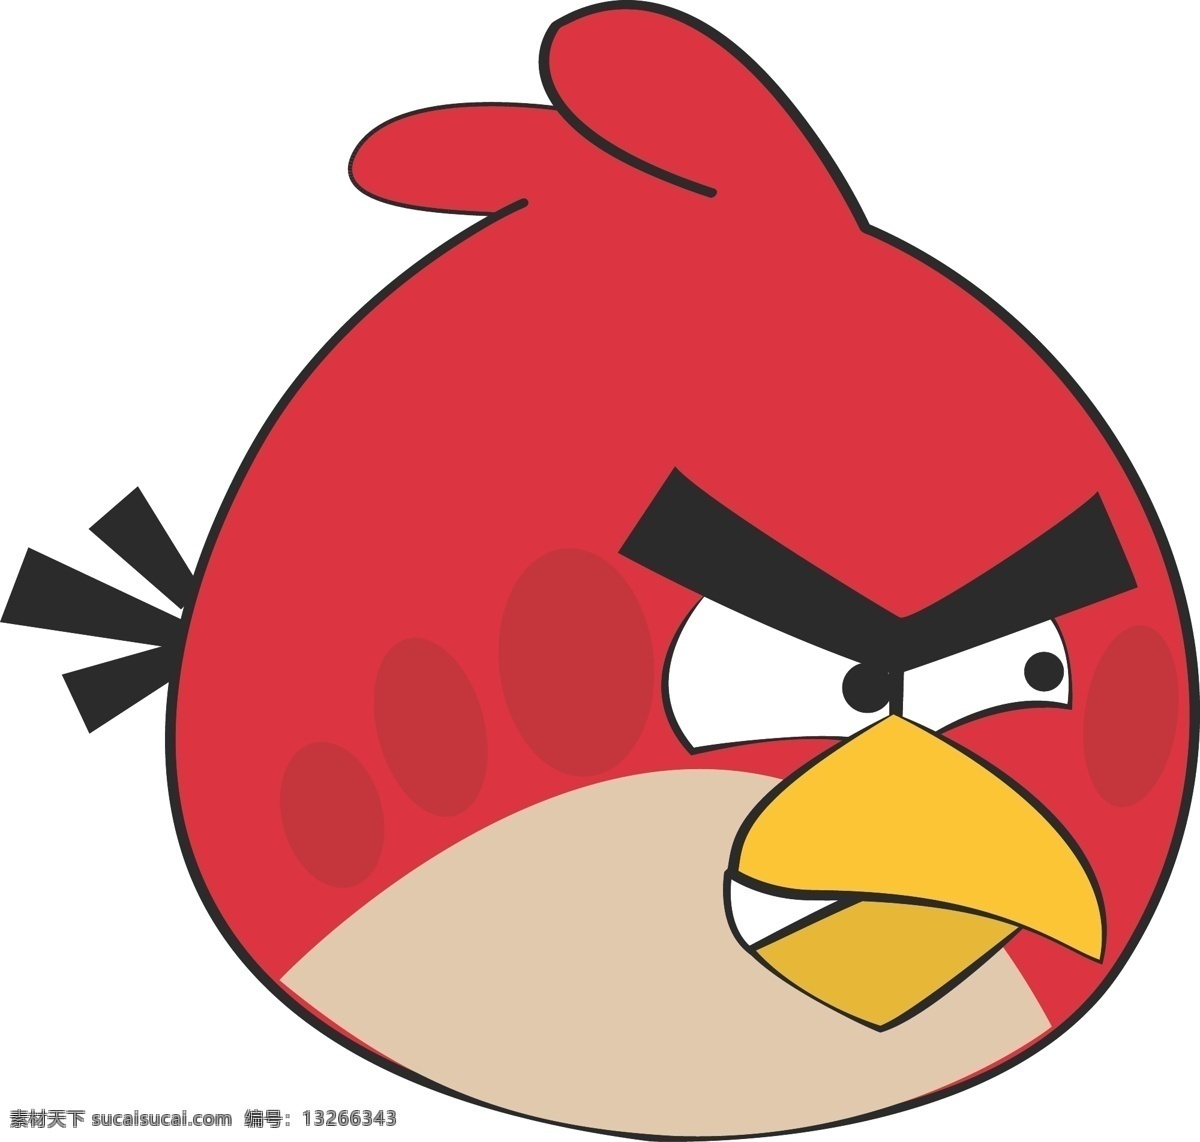 卡通 愤怒 小鸟 愤怒的鸟 愤怒的红鸟 卡通鸟 矢量 图标 动物矢量 动漫动画